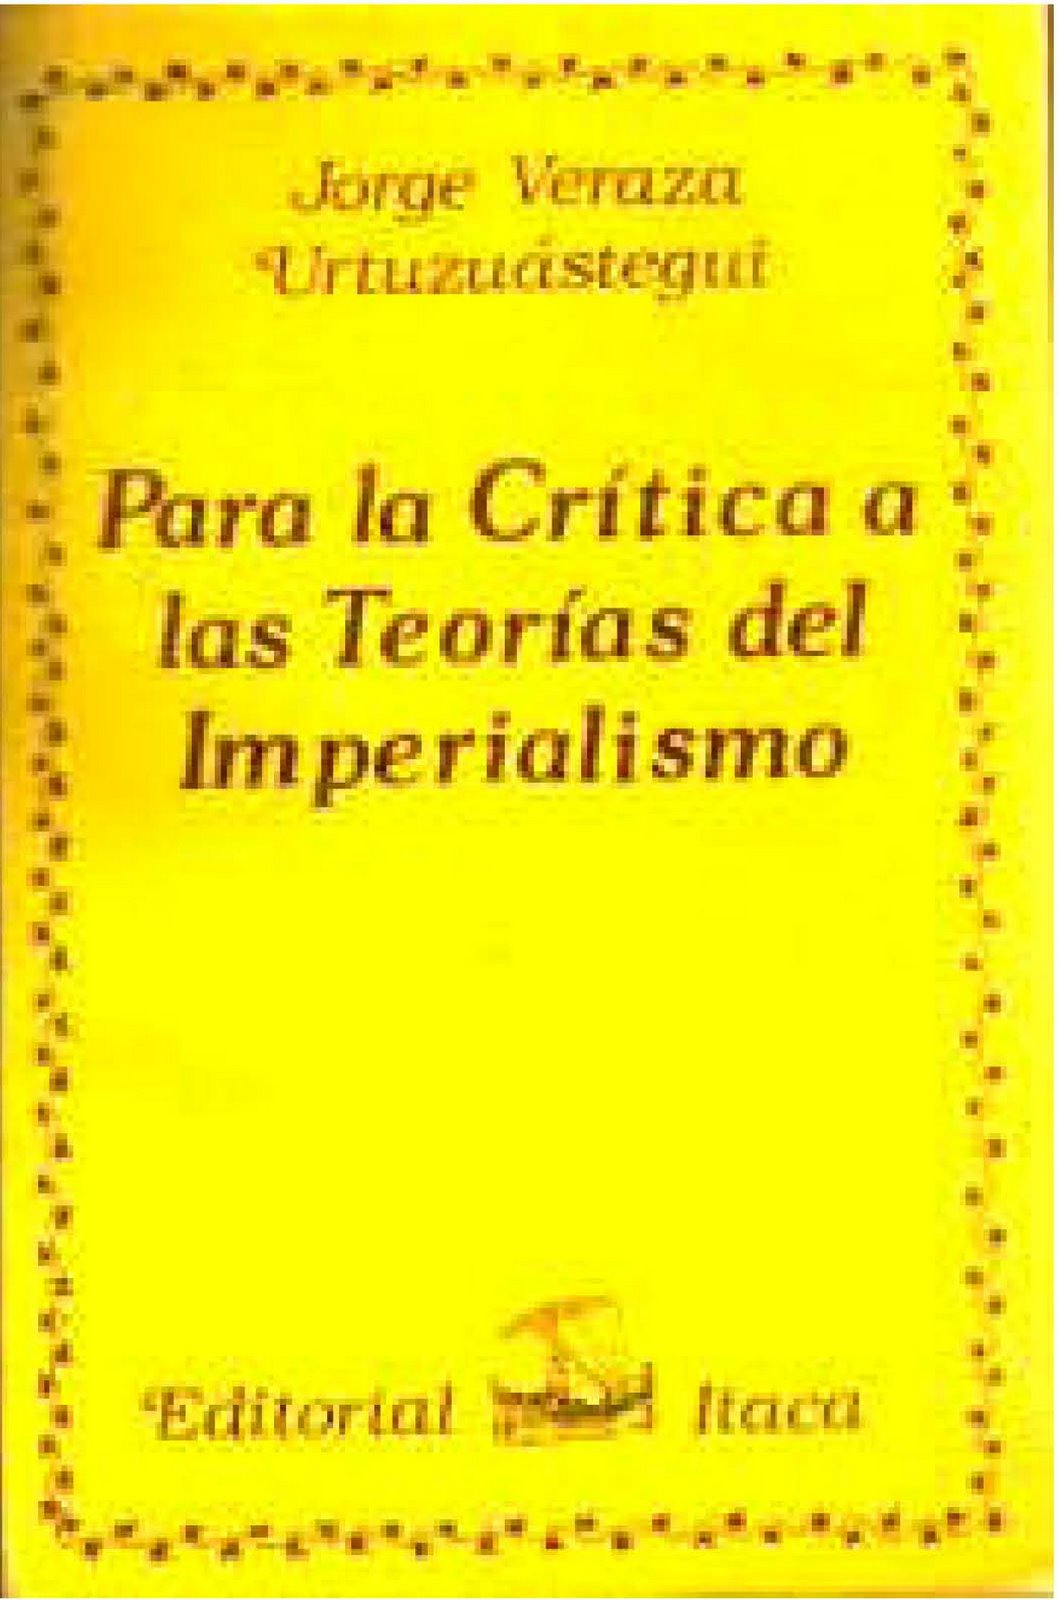 [Para+la+critica+a+las+teorias+del+imperialismo.jpg]